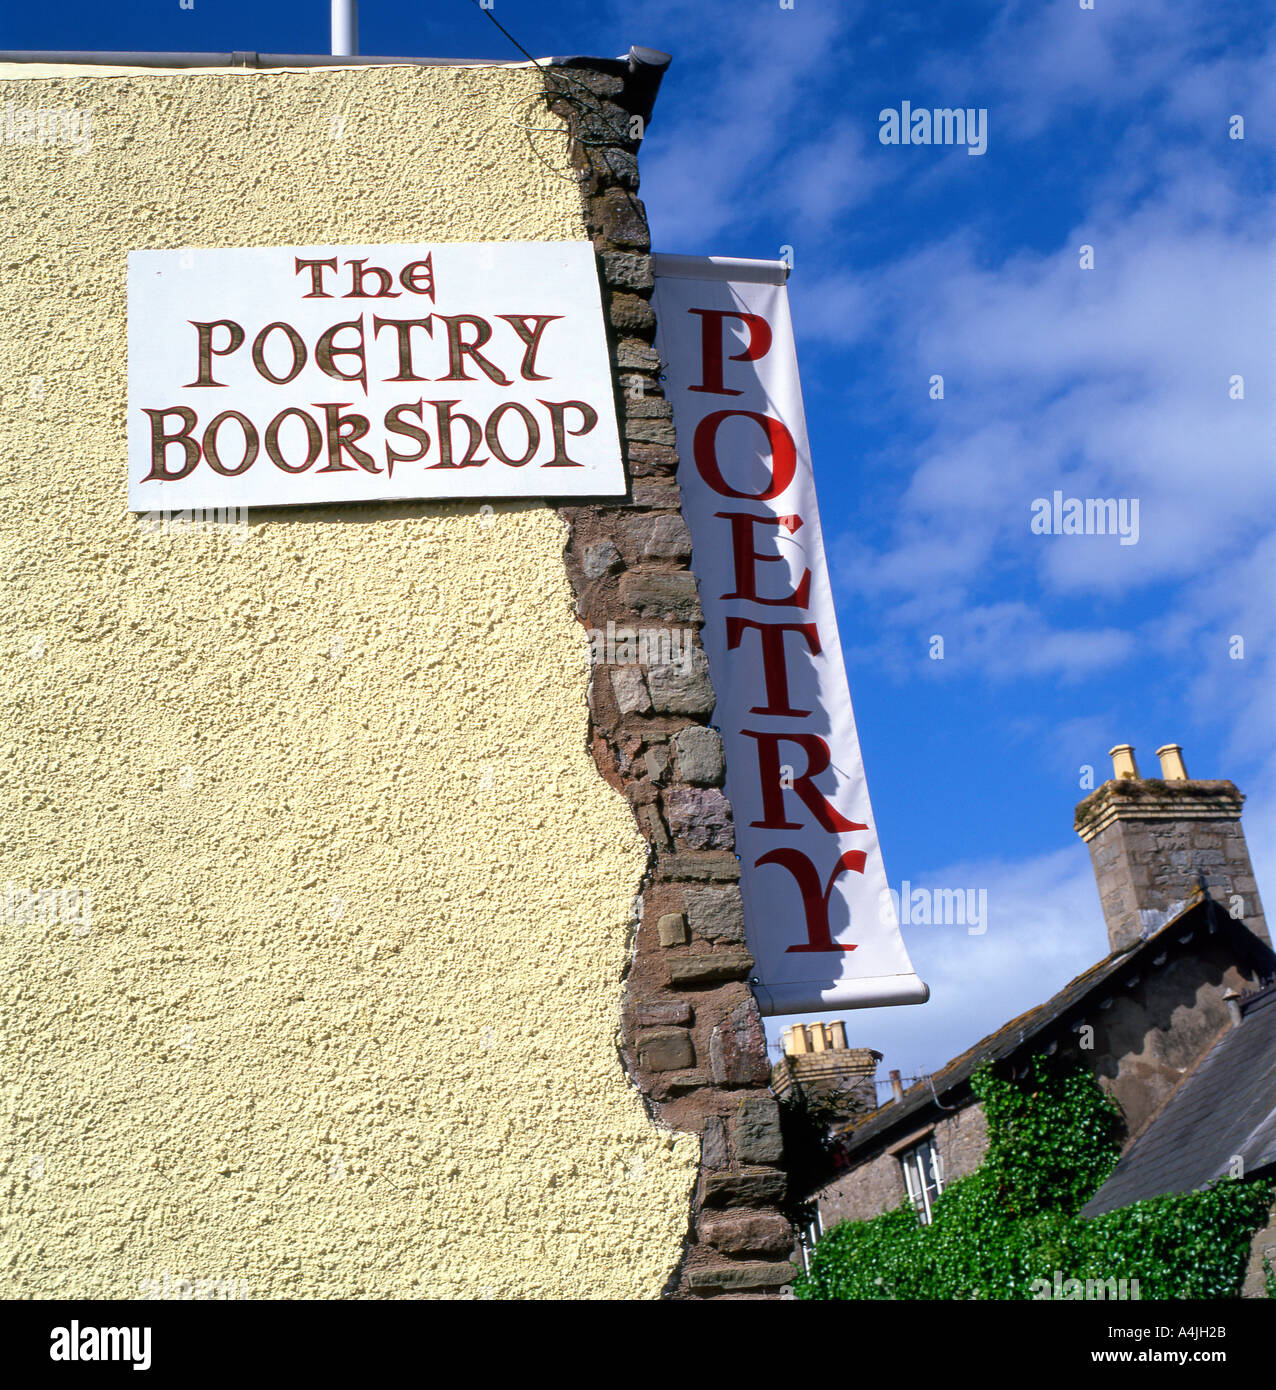 The Poetry Bookshop Außenansicht des Shops und Schild in Hay auf Wye Powys Wales Großbritannien KATHY DEWITT Stockfoto